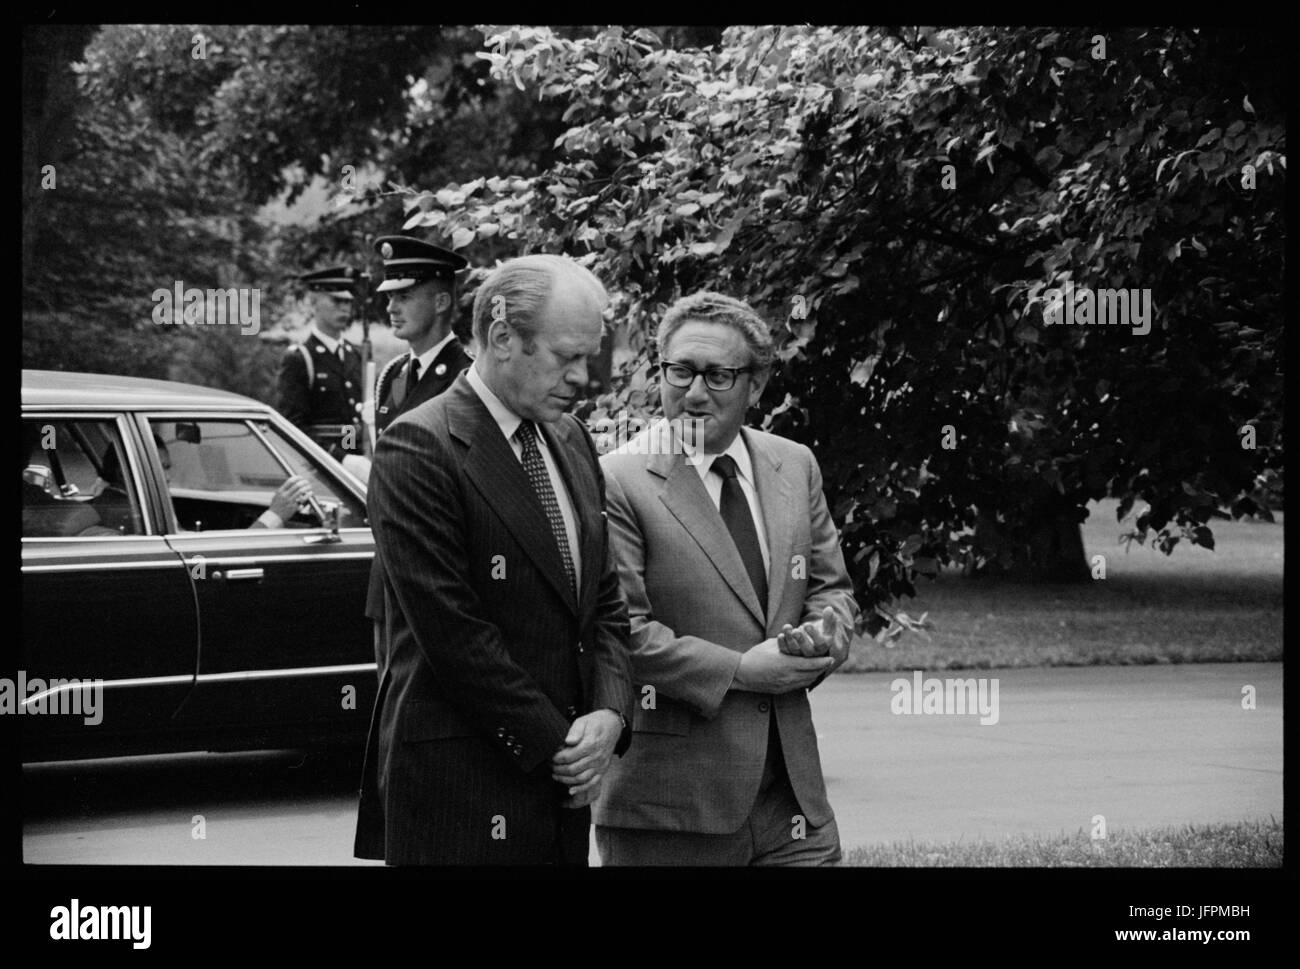 Präsident Gerald Ford und Staatssekretär Henry Kissinger, unterhalten, auf dem Gelände das Weiße Haus, Washington, D.C., 16. August 1975. Foto von Thomas O'Halloran. Stockfoto